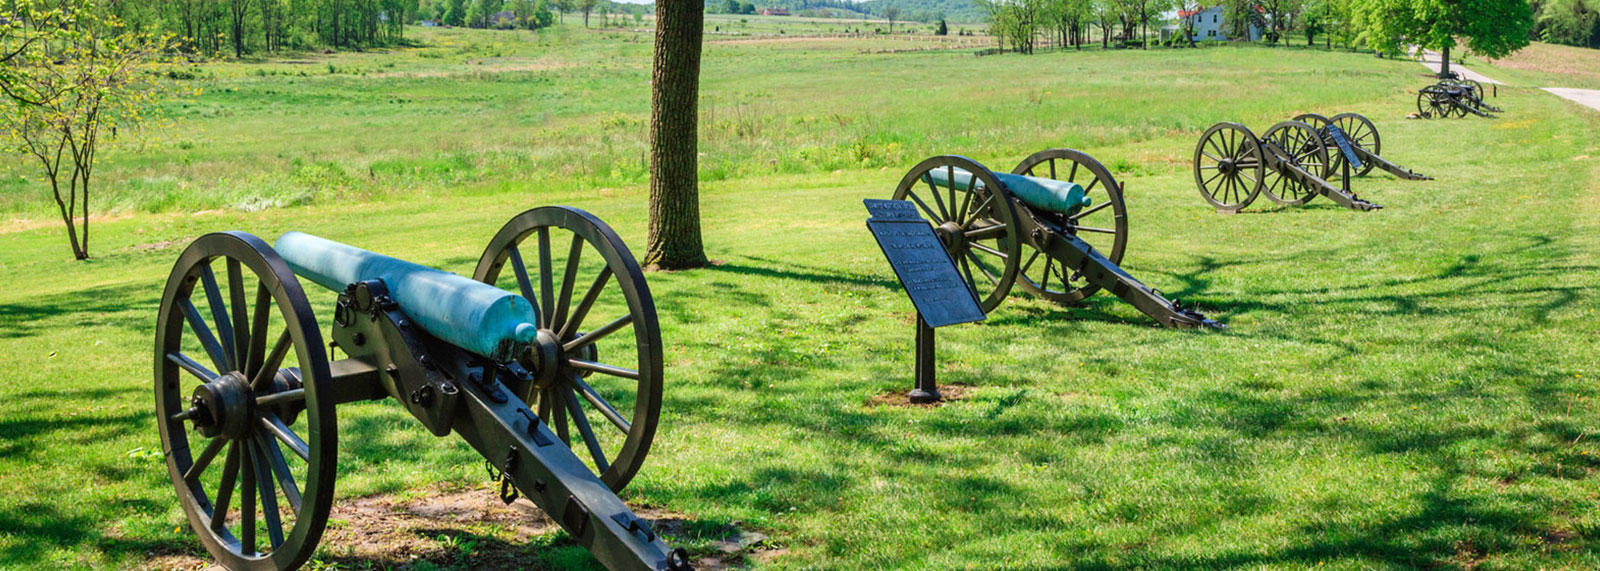 Gettysburg Attractions